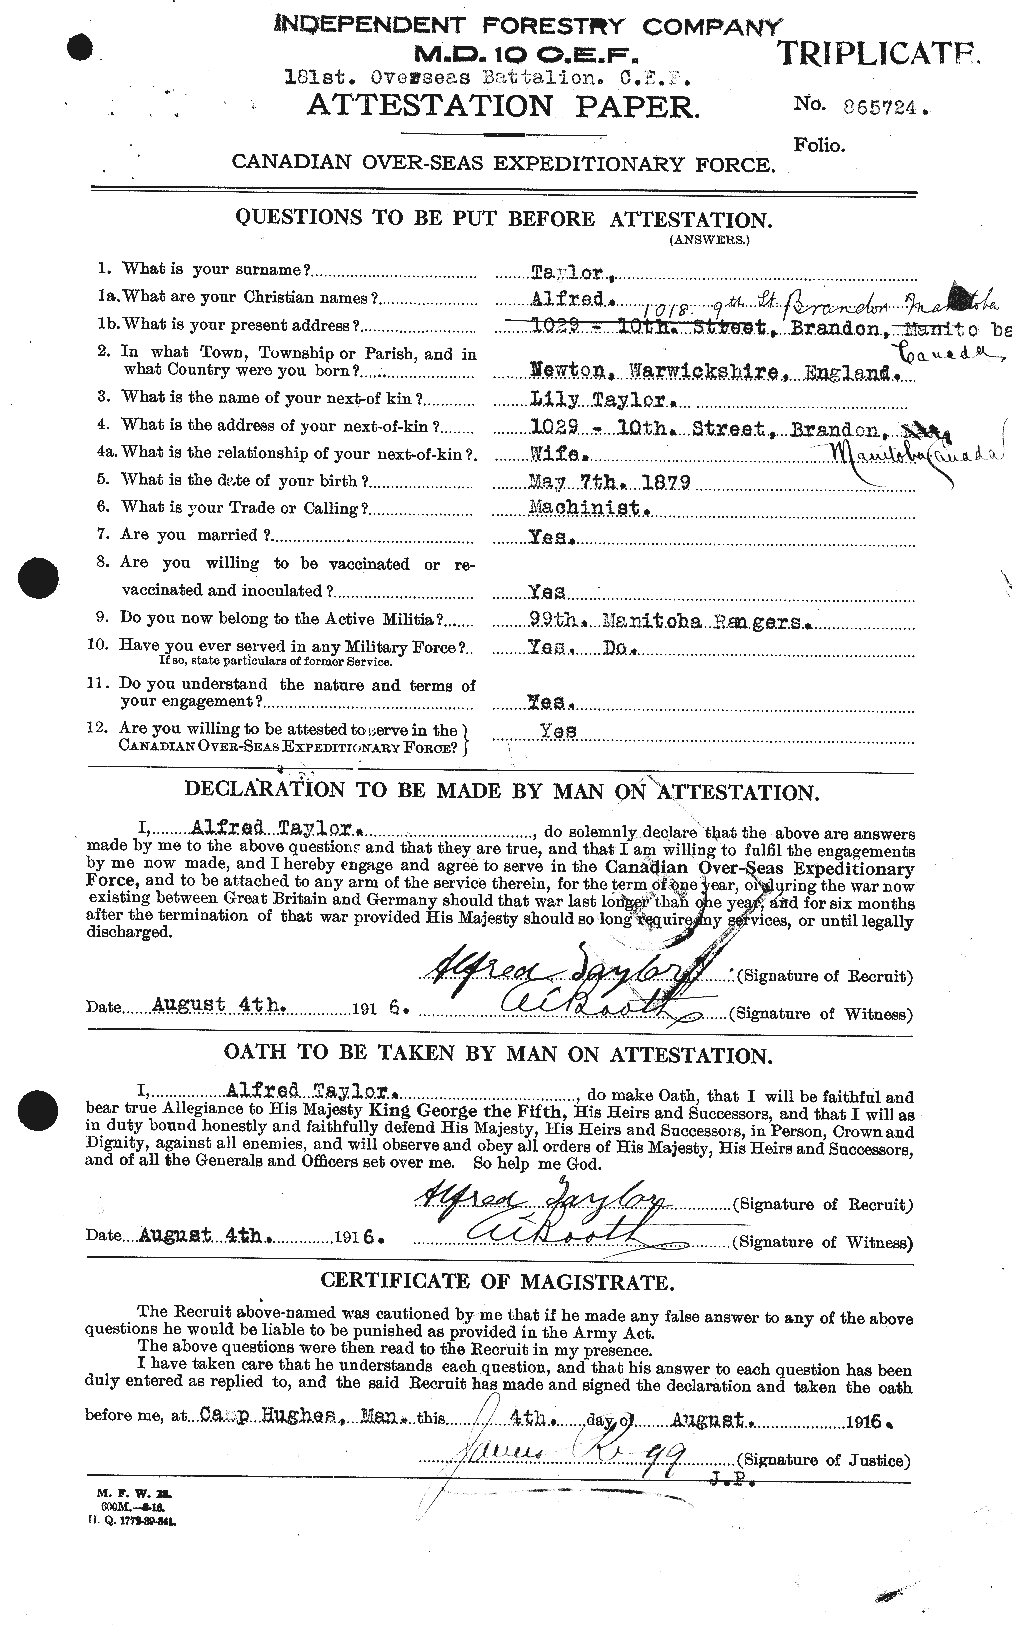 Dossiers du Personnel de la Première Guerre mondiale - CEC 626161a